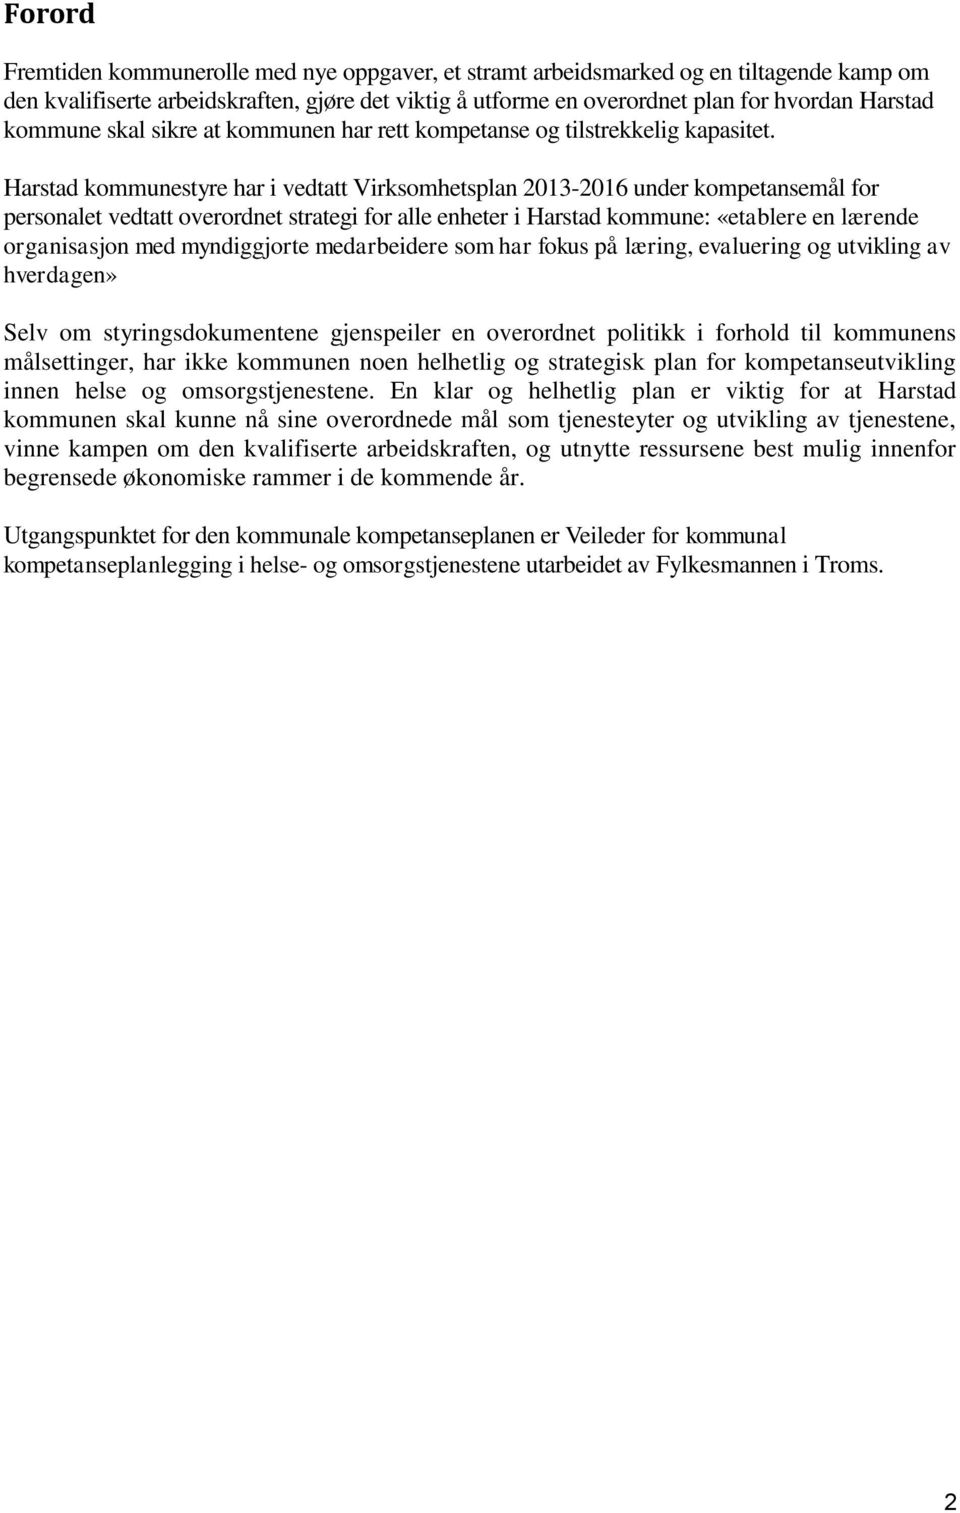 Harstad kommunestyre har i vedtatt Virksomhetsplan 2013-2016 under kompetansemål for personalet vedtatt overordnet strategi for alle enheter i Harstad kommune: «etablere en lærende organisasjon med